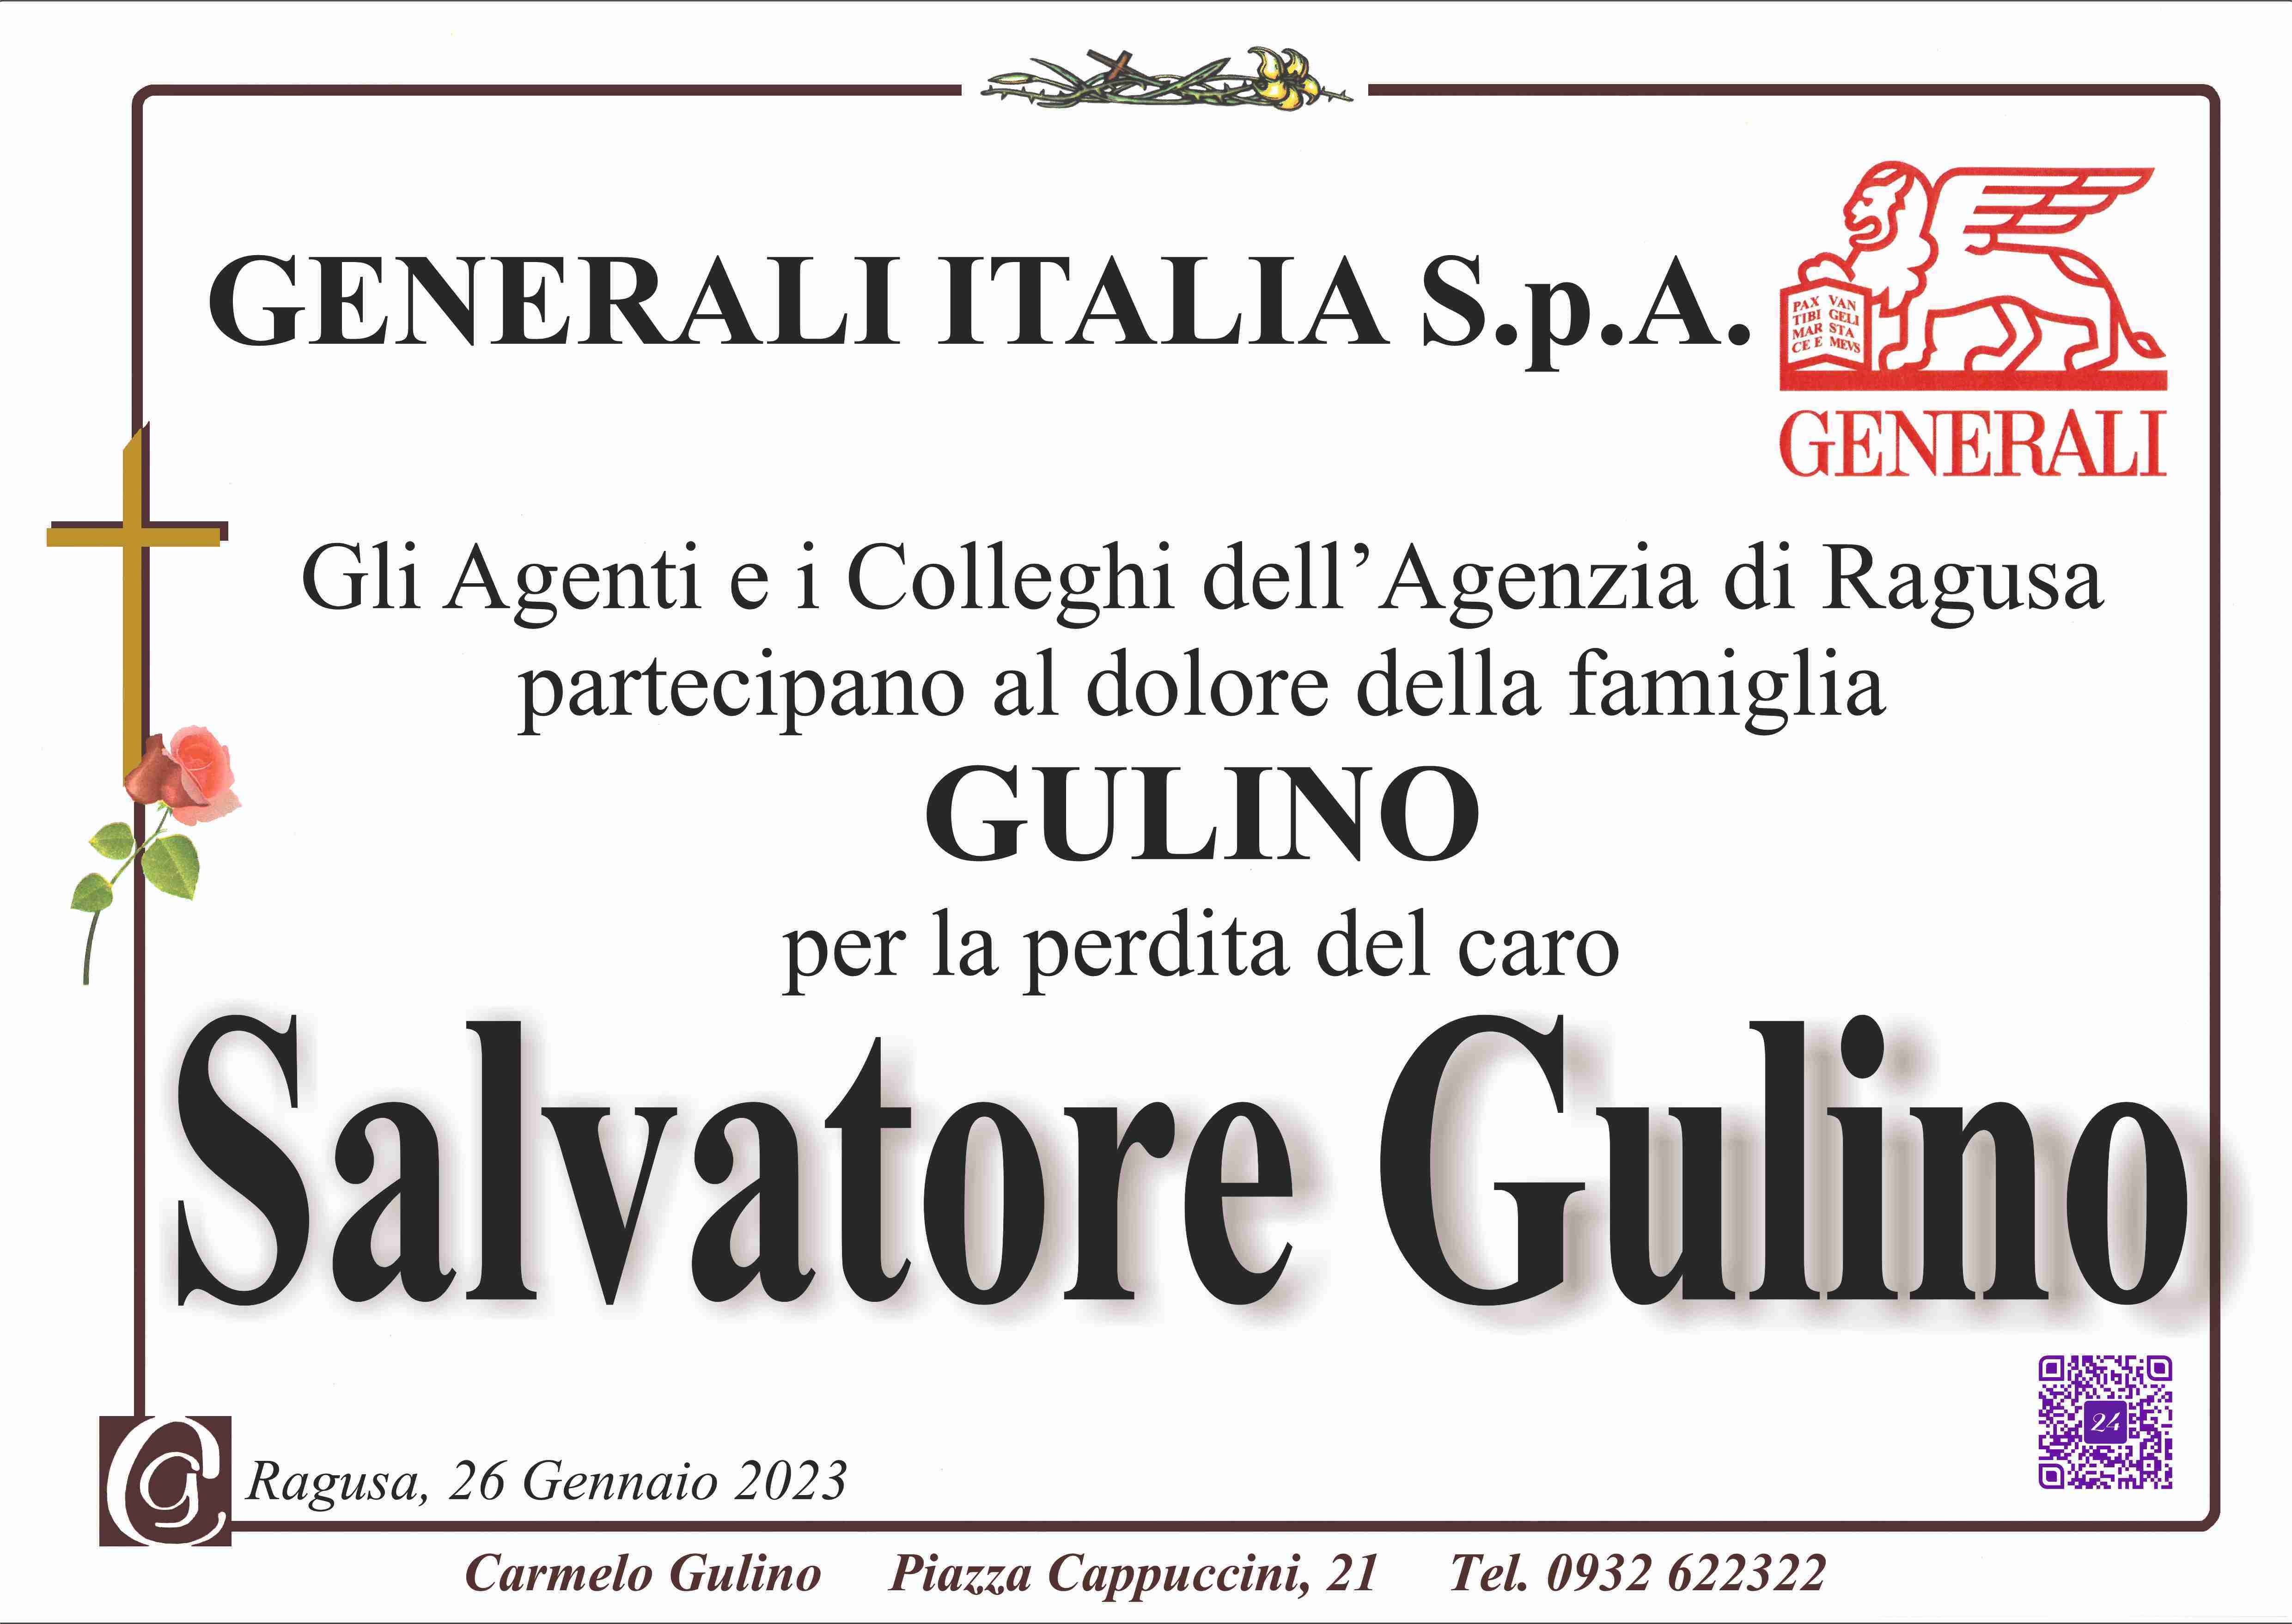 Salvatore Gulino